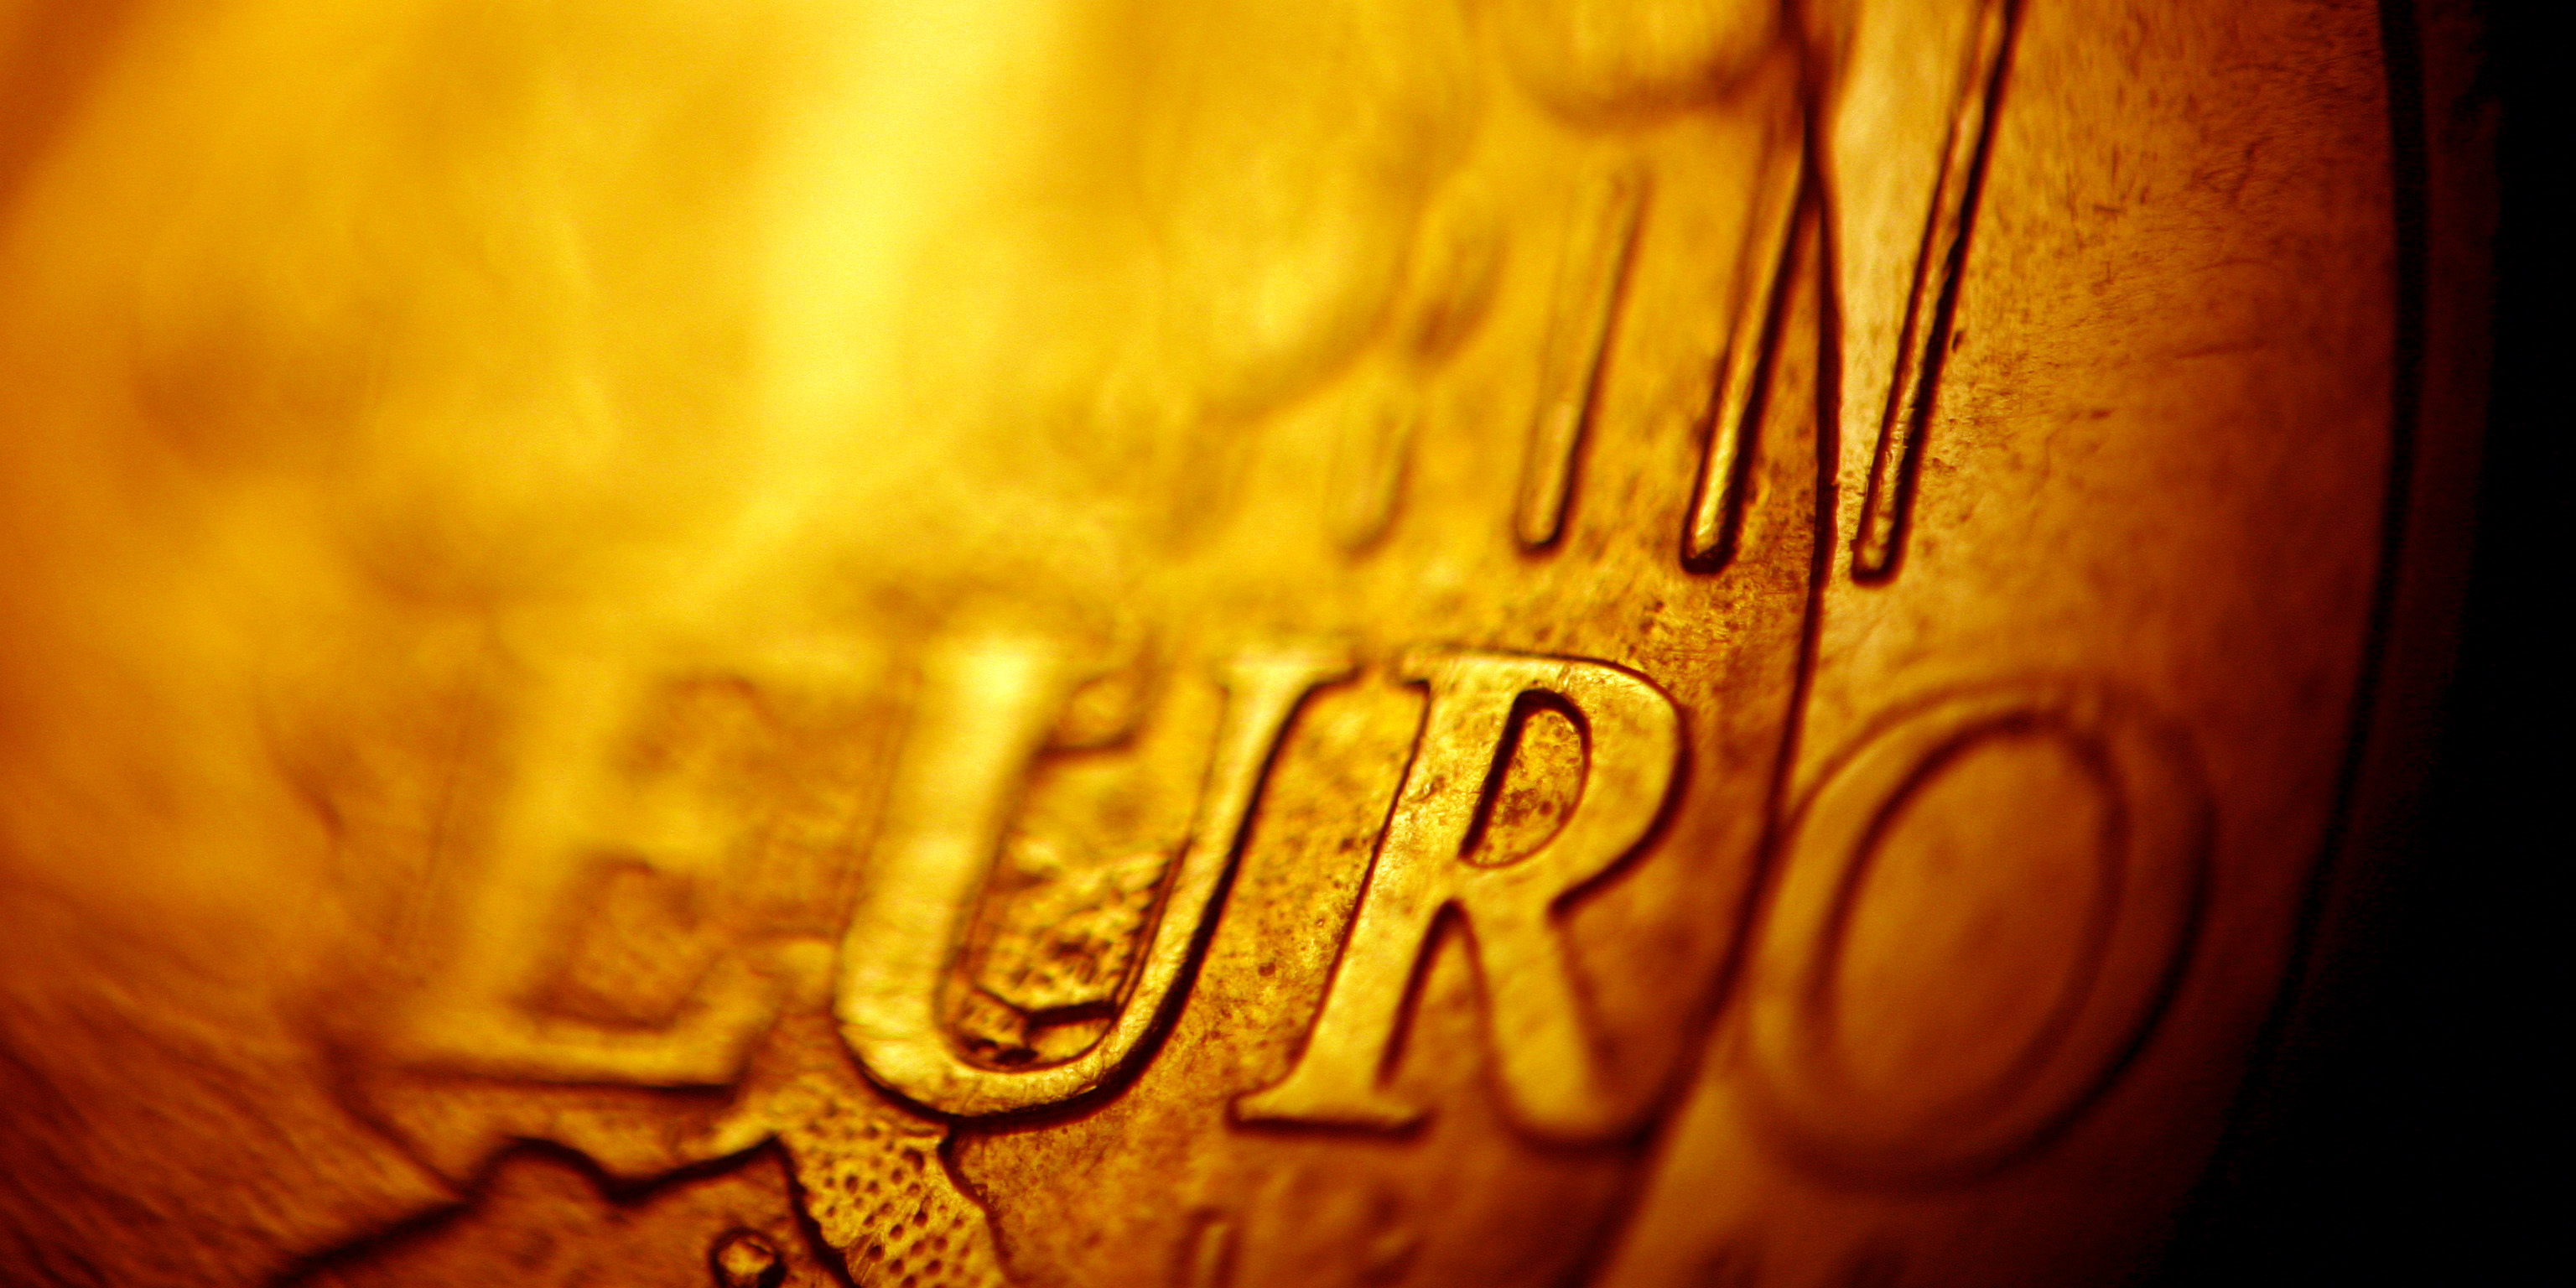 Makroaufnahme eines europäischen Cent-Geldstücks